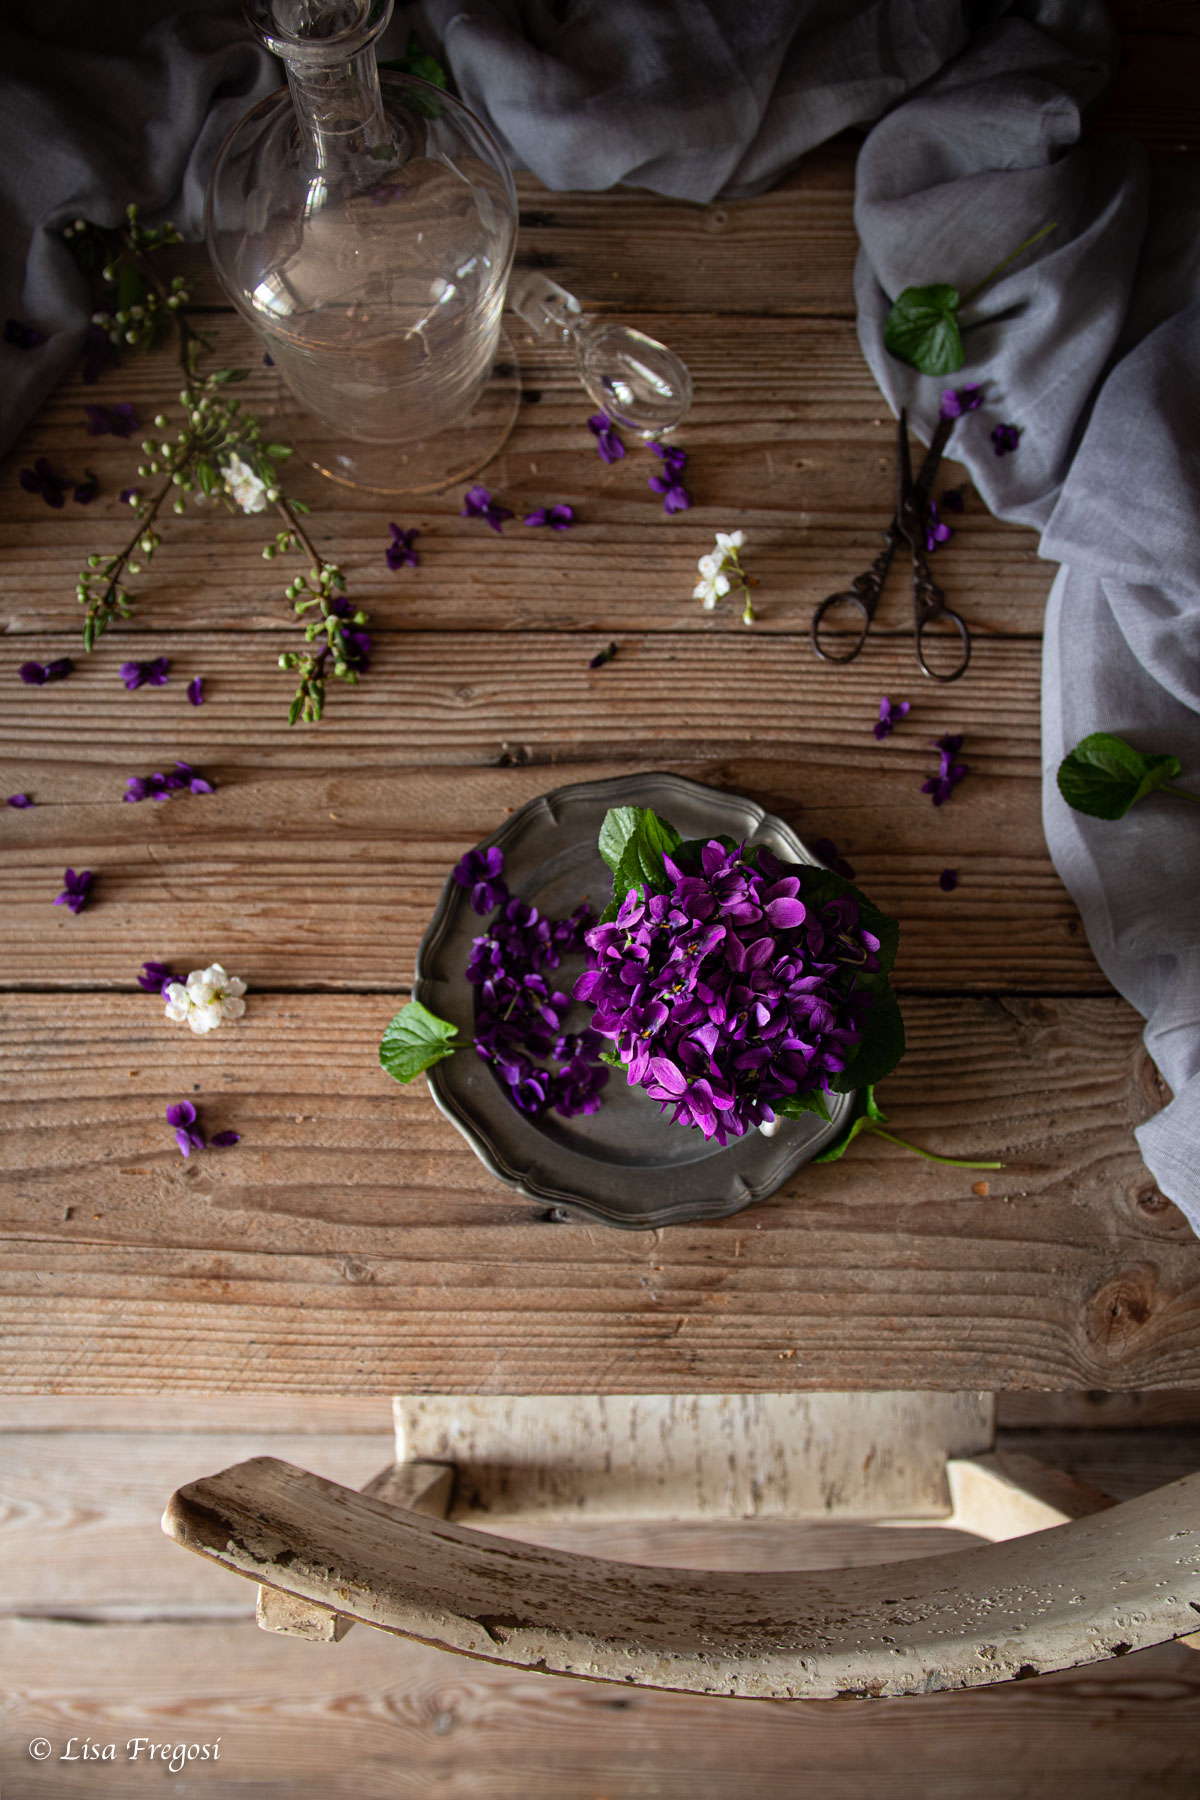 violette proprietà benefiche e uso in cucina